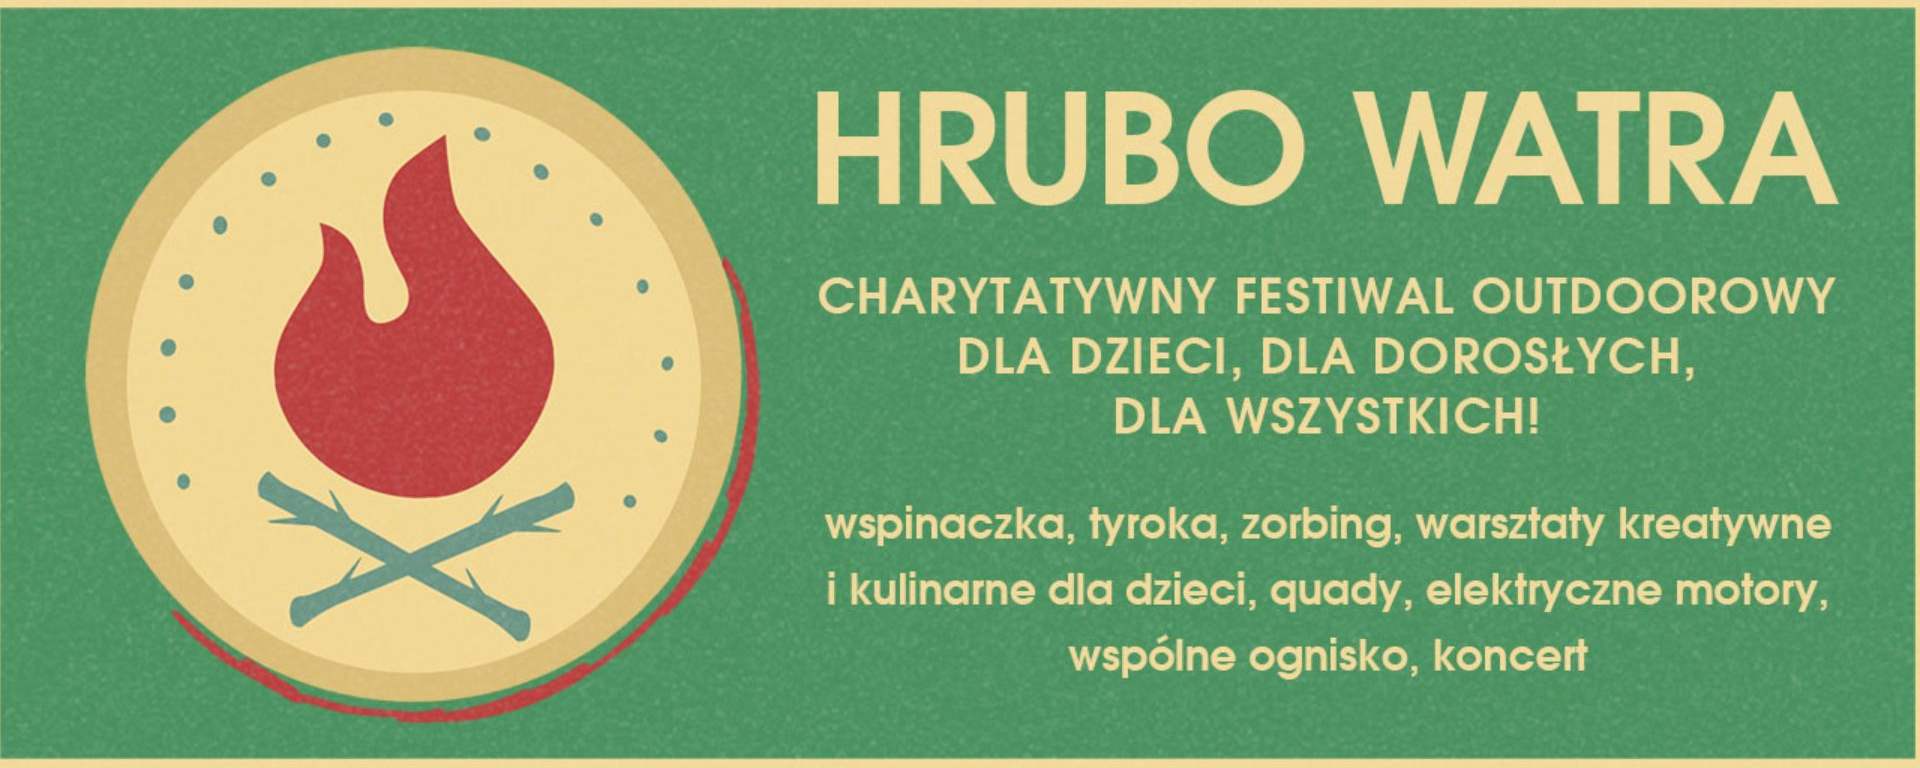 Charytatywny Festiwal Outdoorowy HRUBO WATRA